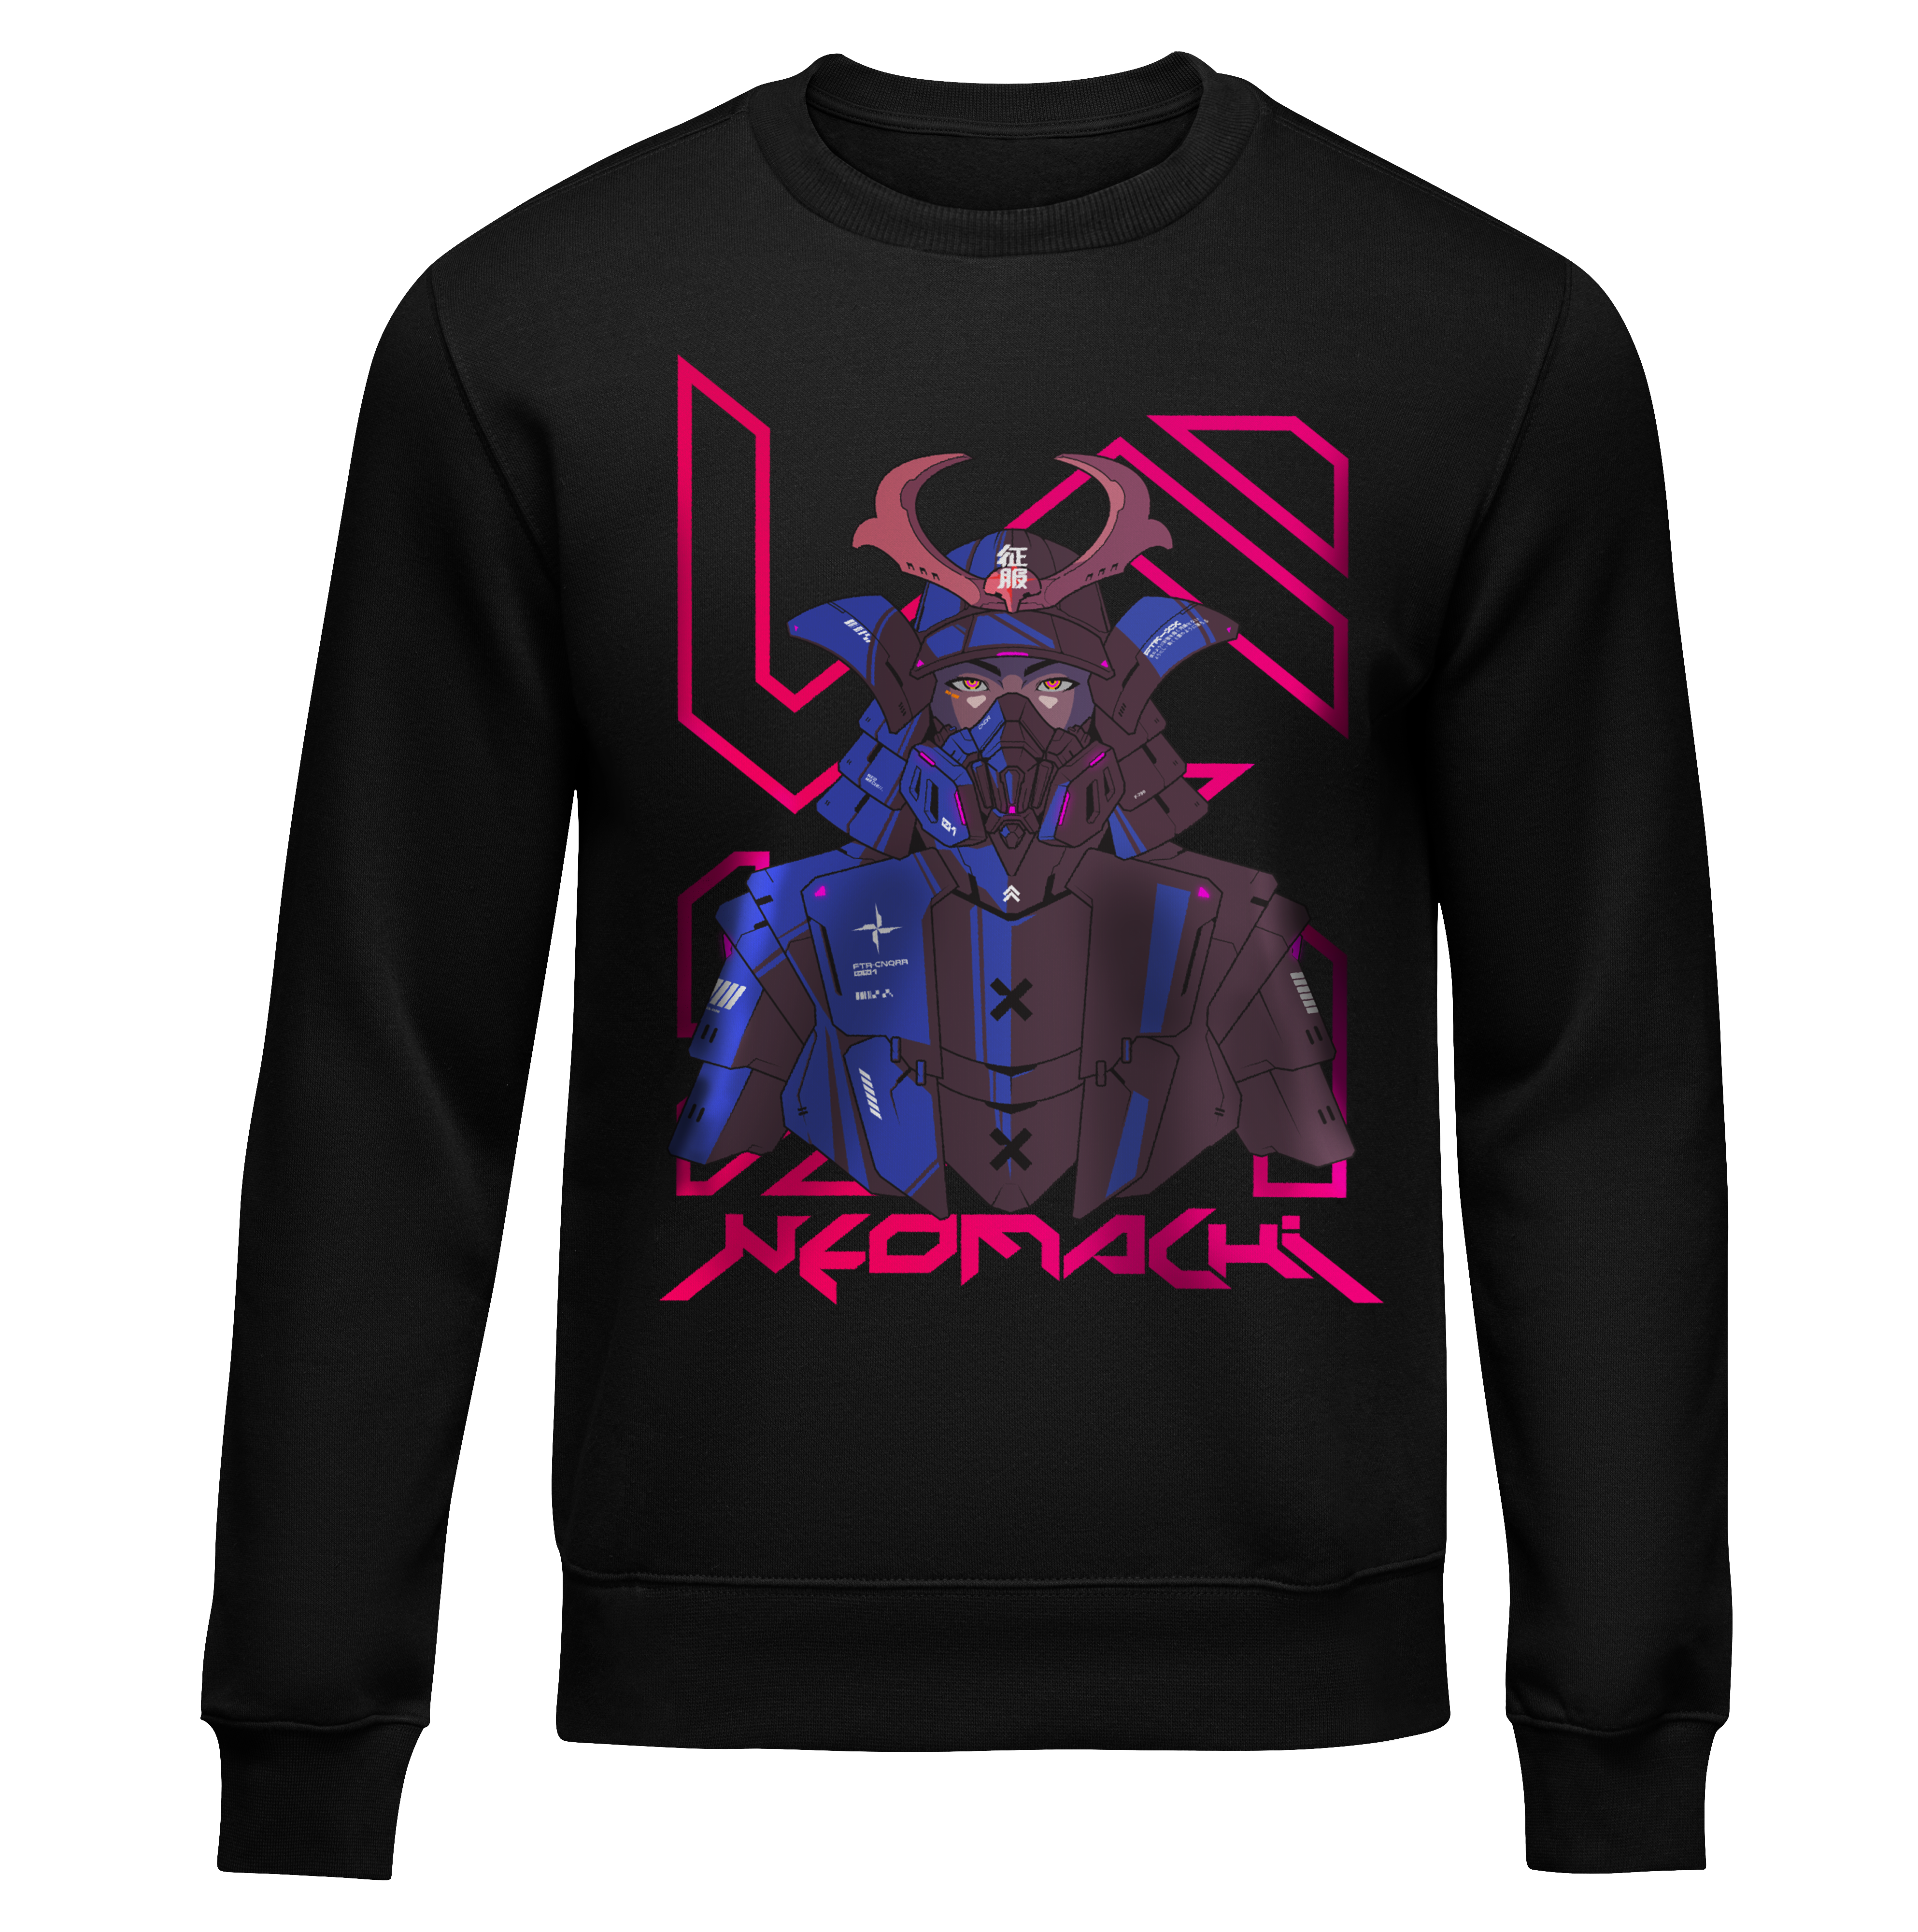 5amur41 sweaters - Black - Front - cyberpunk sweaters - Neomachi